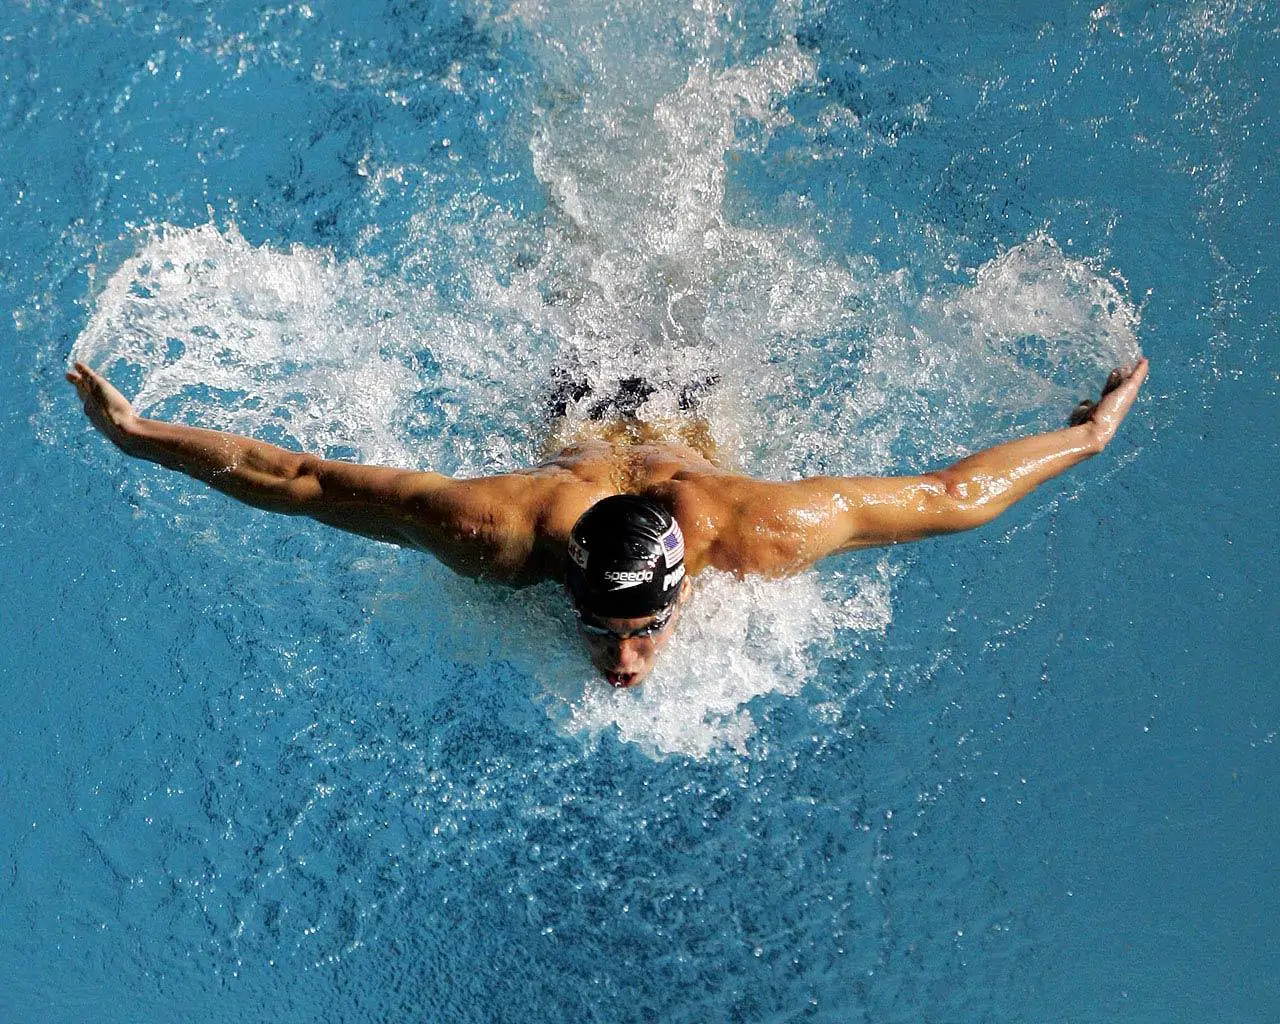 Nuoto: uno dei migliori sport per un fisico muscoloso e definito